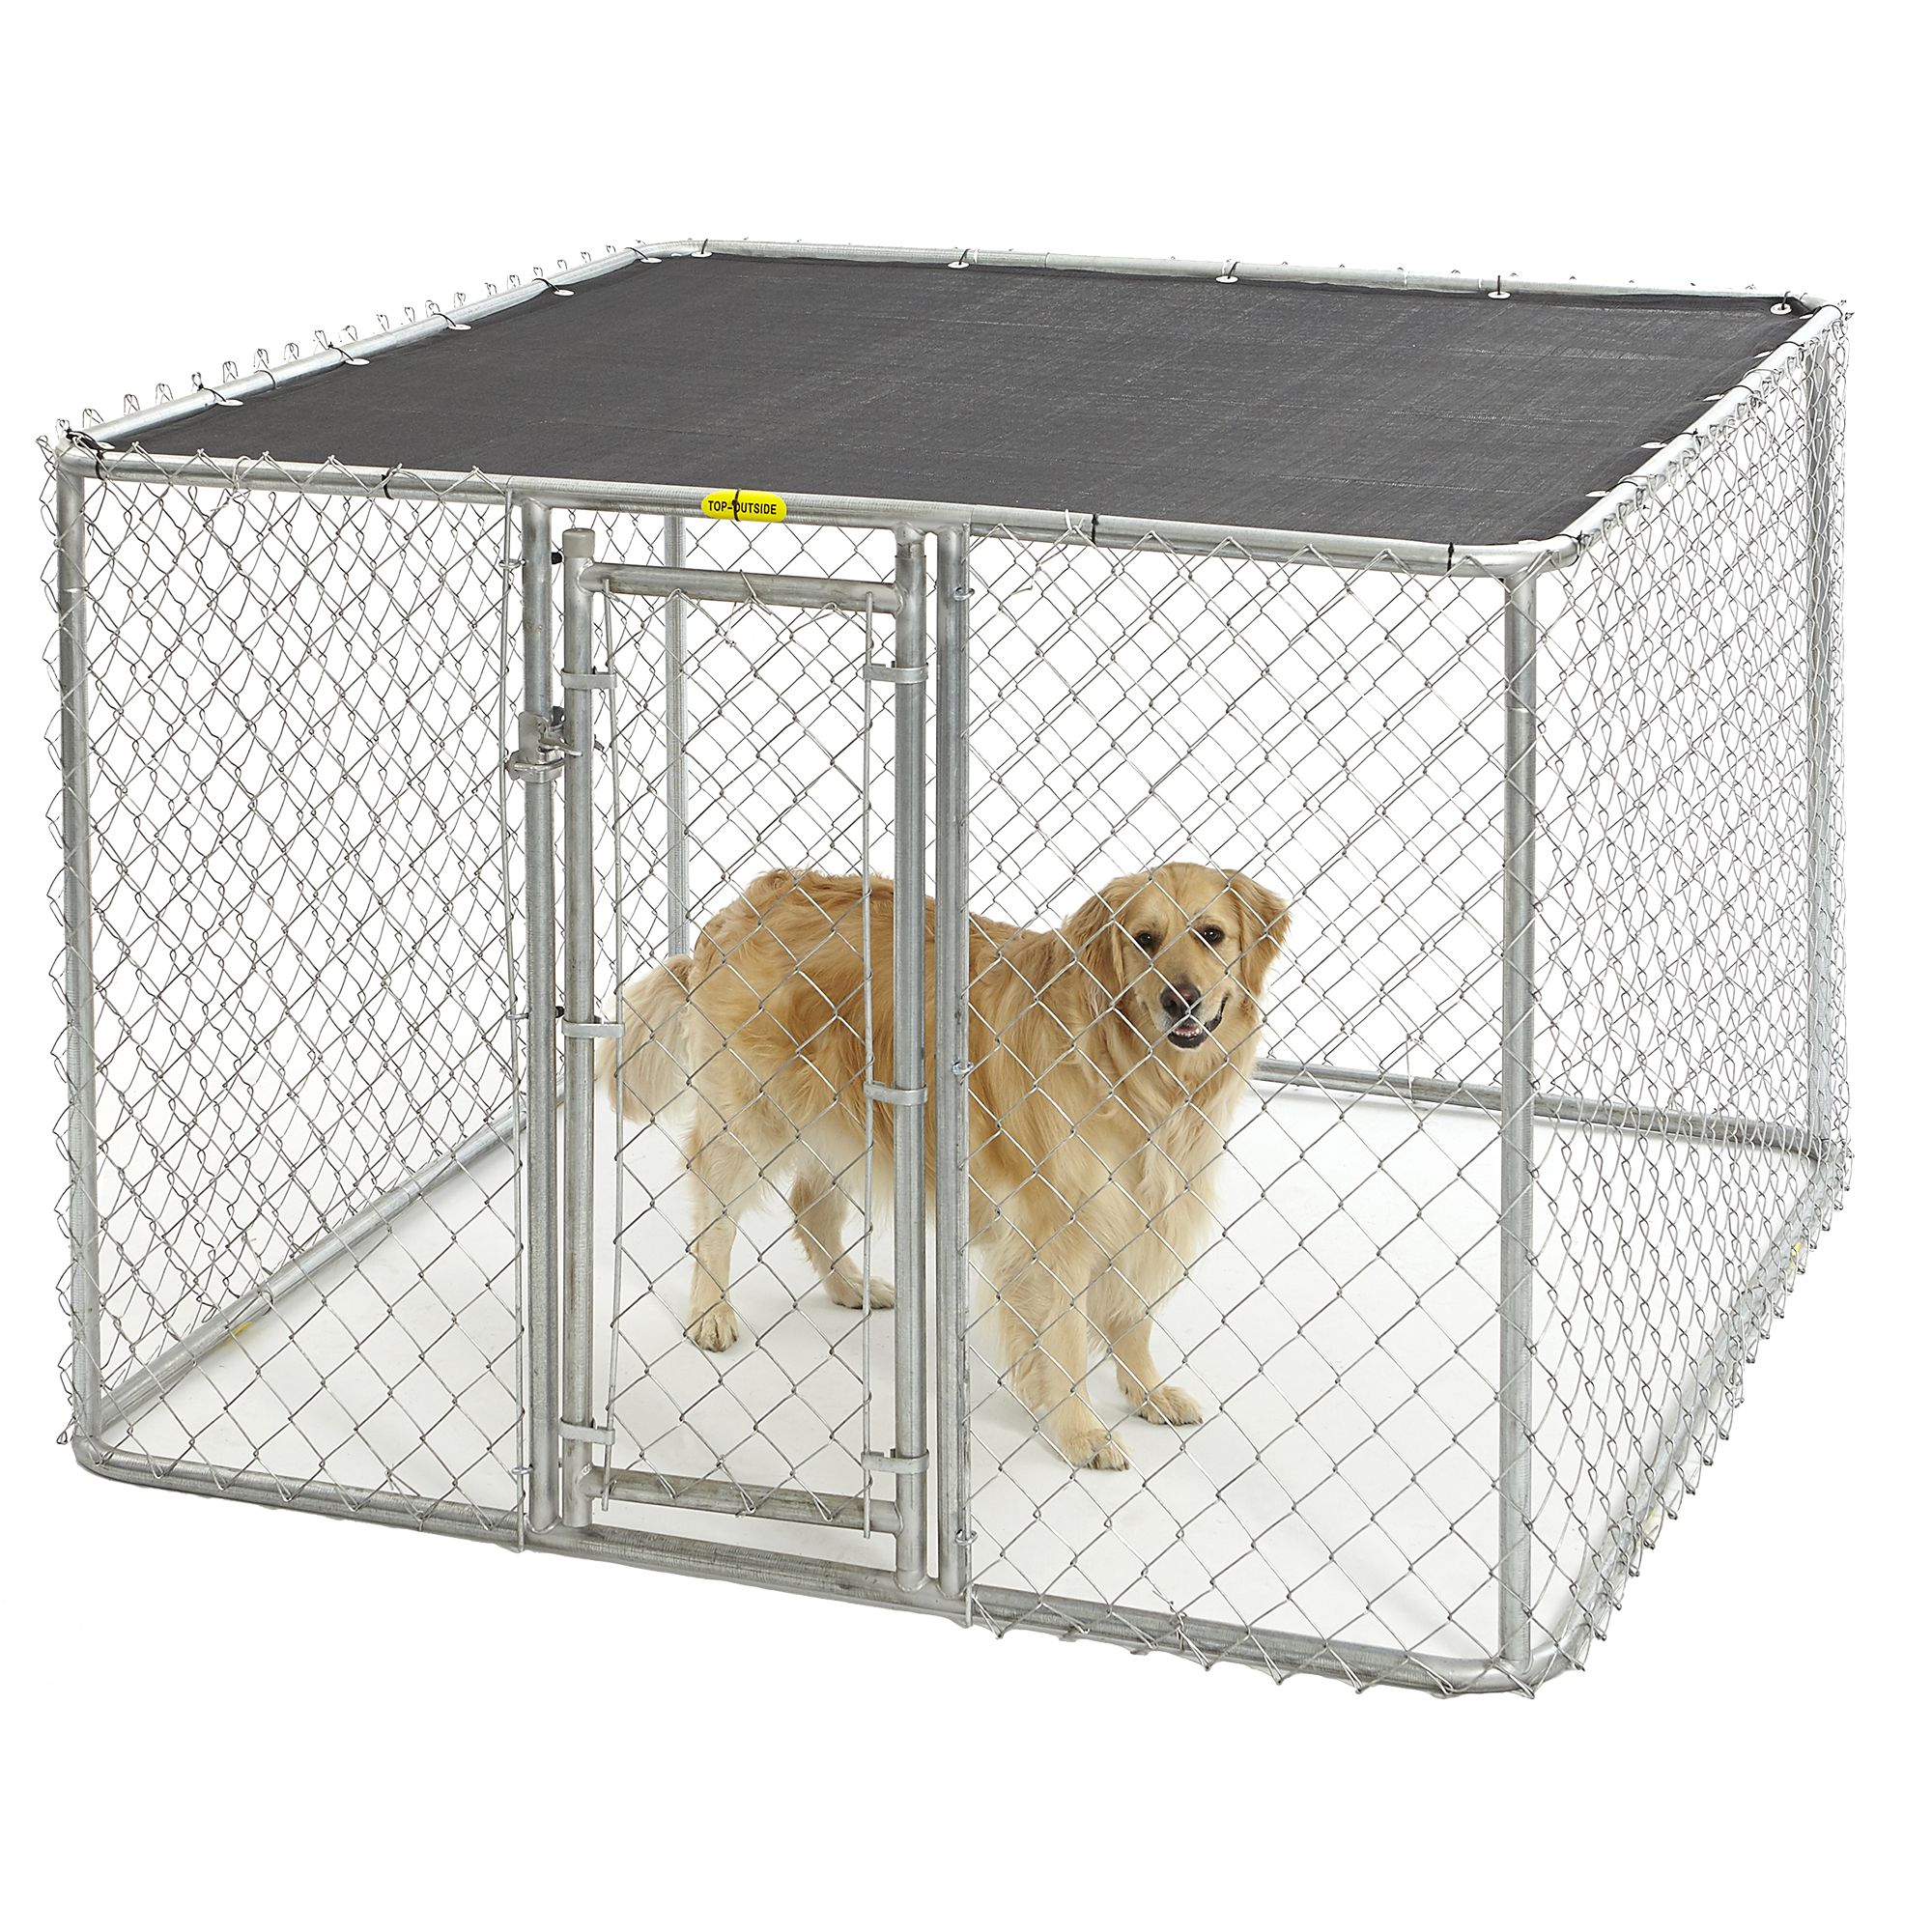 petsmart dog kennels for outside